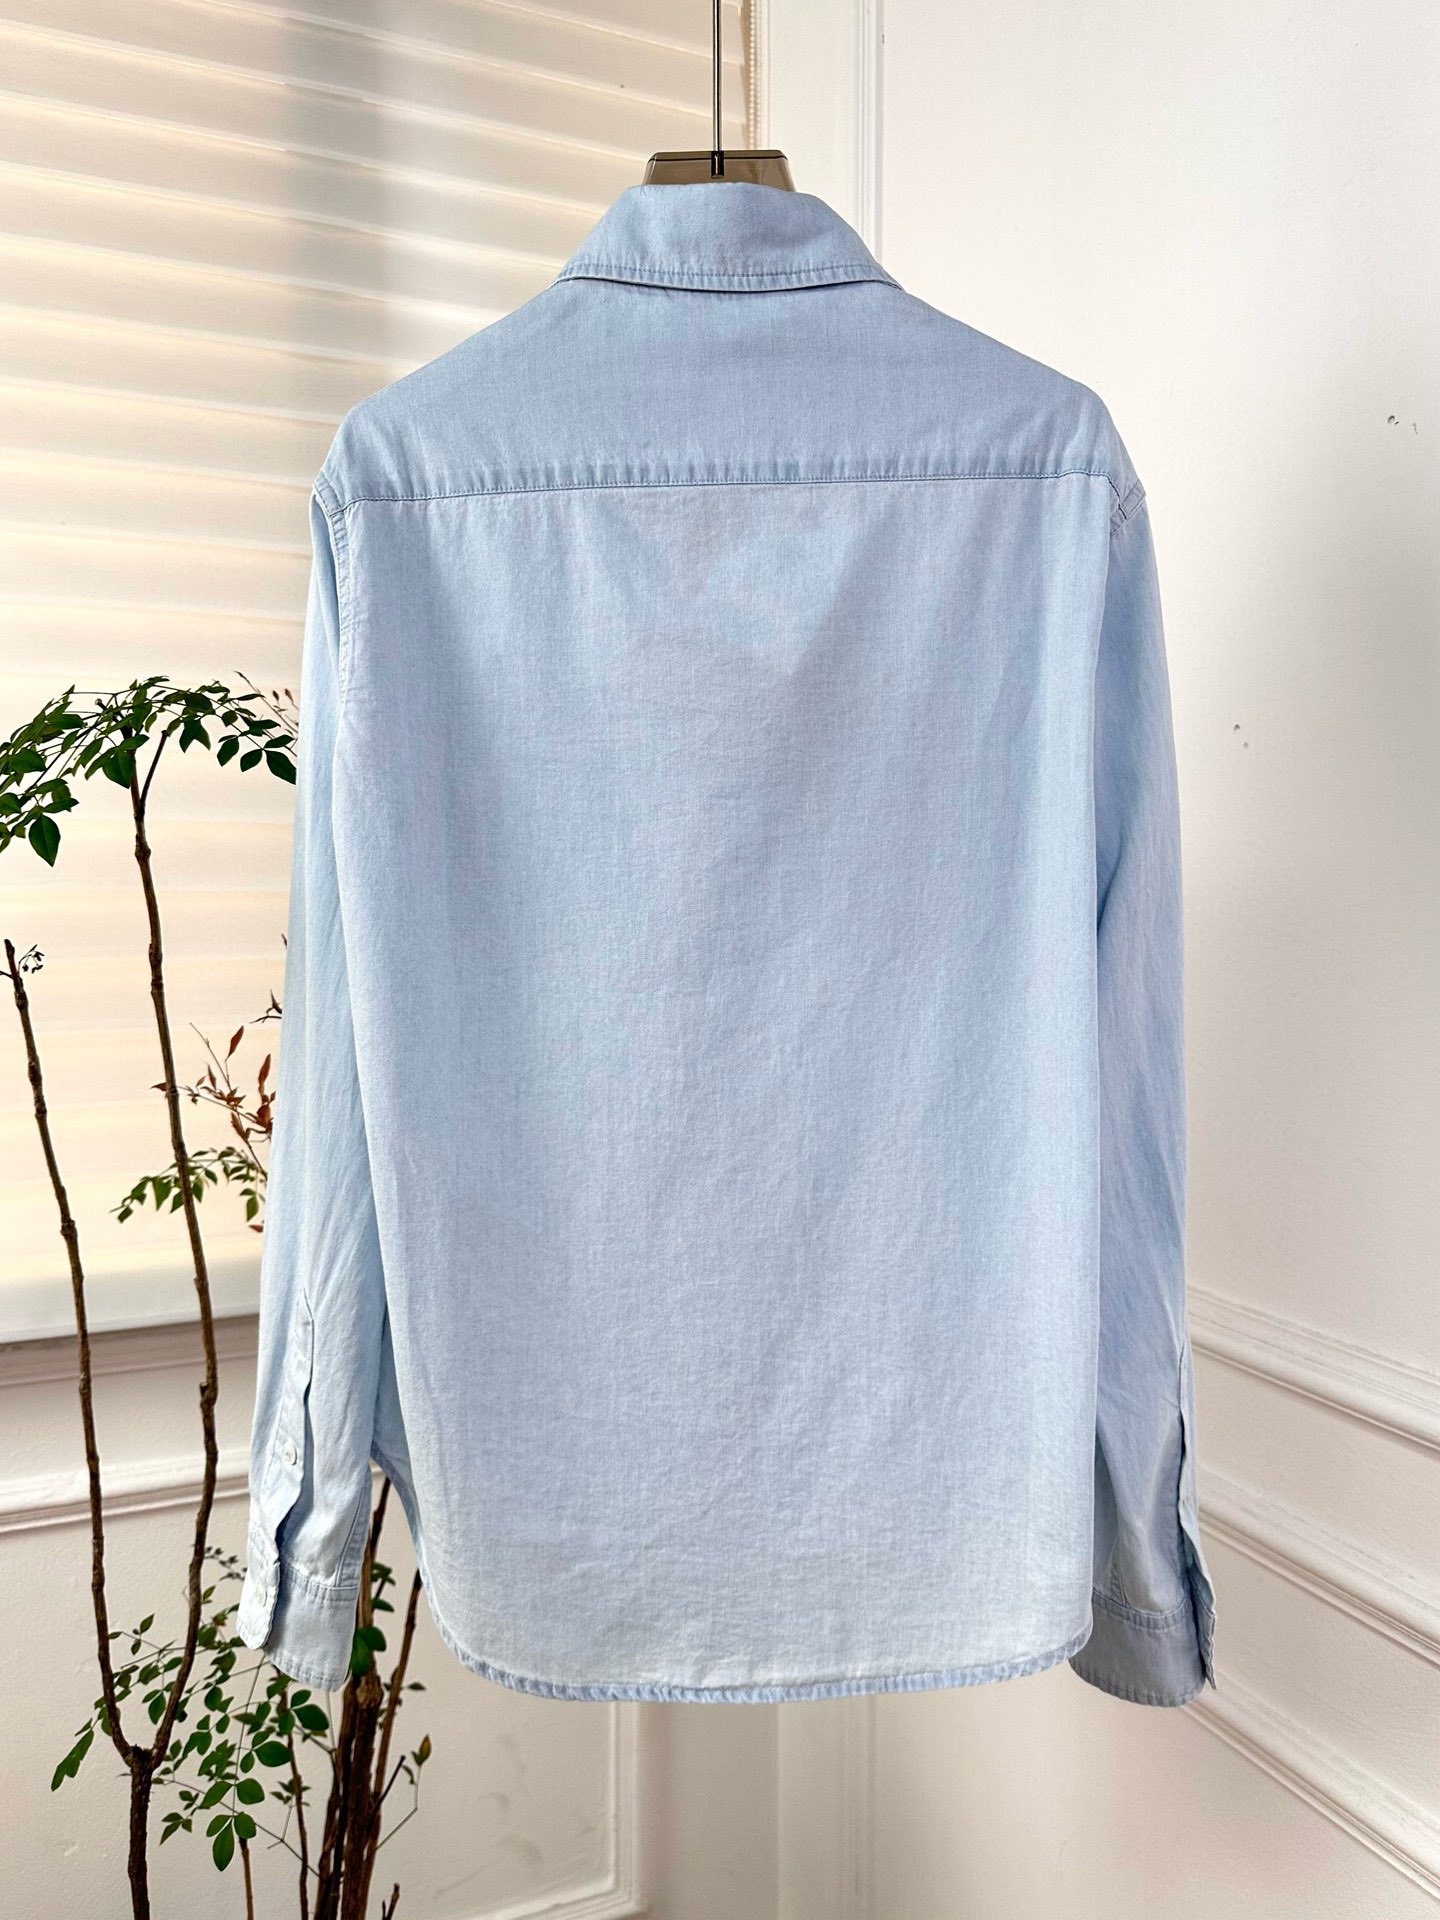 miumiu ブルー シャツ激安通販 ビジネス 純綿 春新品 デニム素材 シンプル 柔らかい ファッション ブルー_5